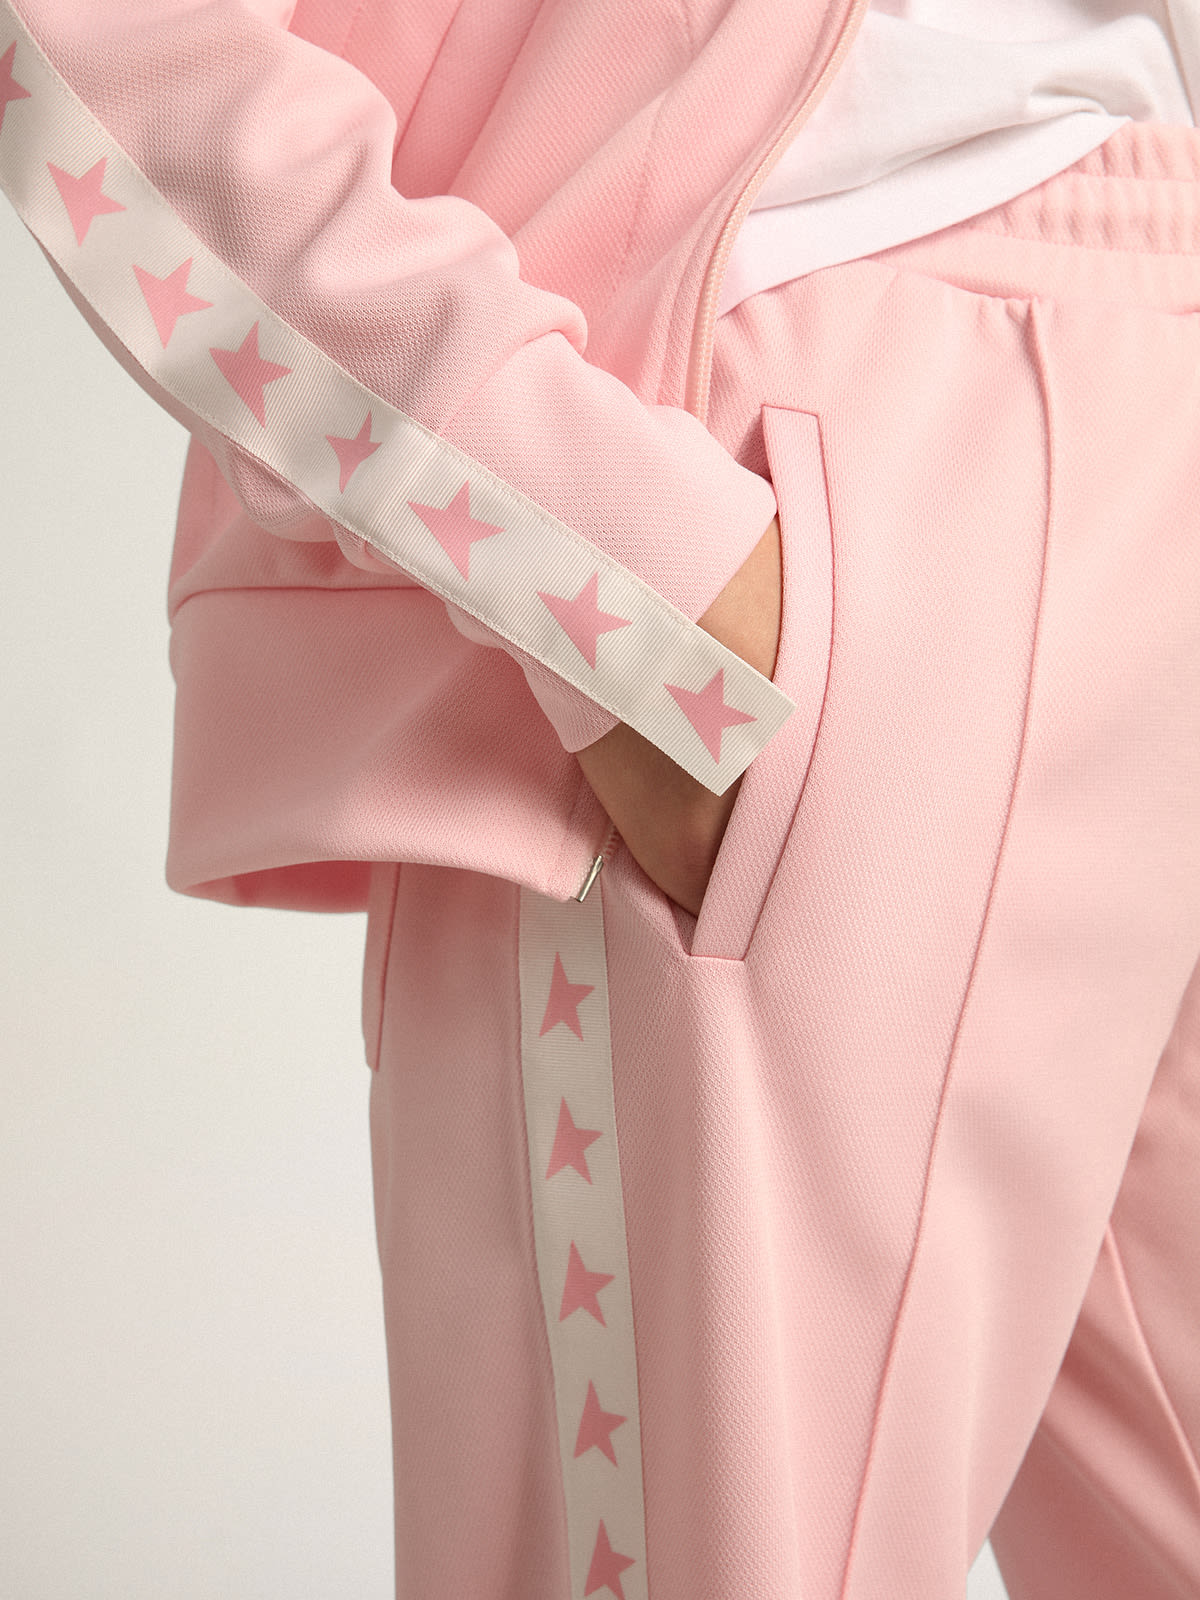 Golden Goose - Women's pink zipped sweatshirt in 